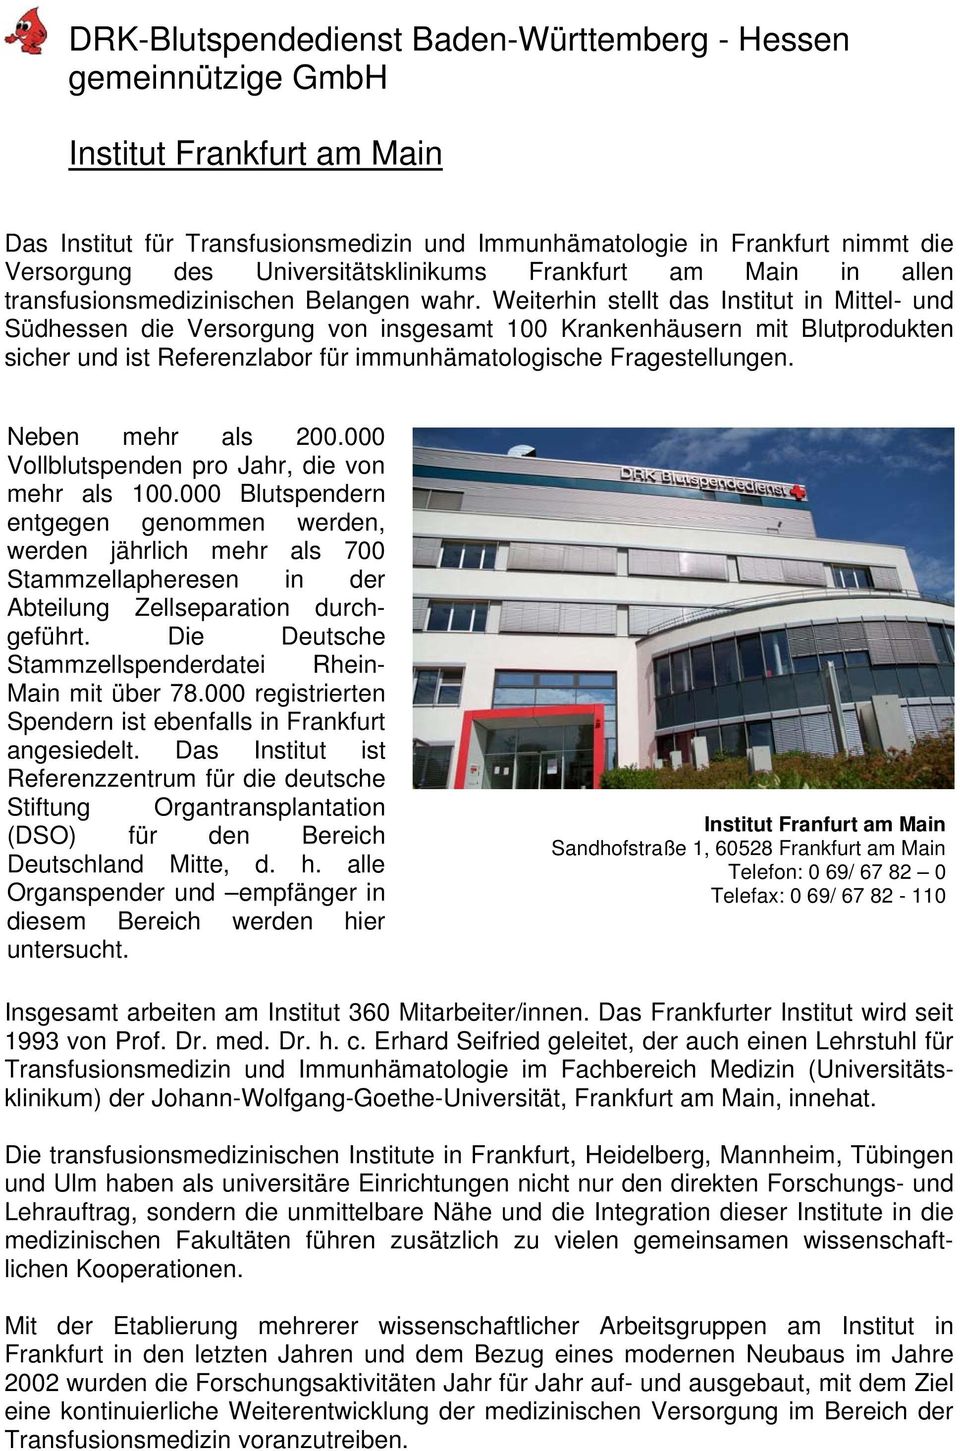 Weiterhin stellt das Institut in Mittel- und Südhessen die Versorgung von insgesamt 100 Krankenhäusern mit Blutprodukten sicher und ist Referenzlabor für immunhämatologische Fragestellungen.